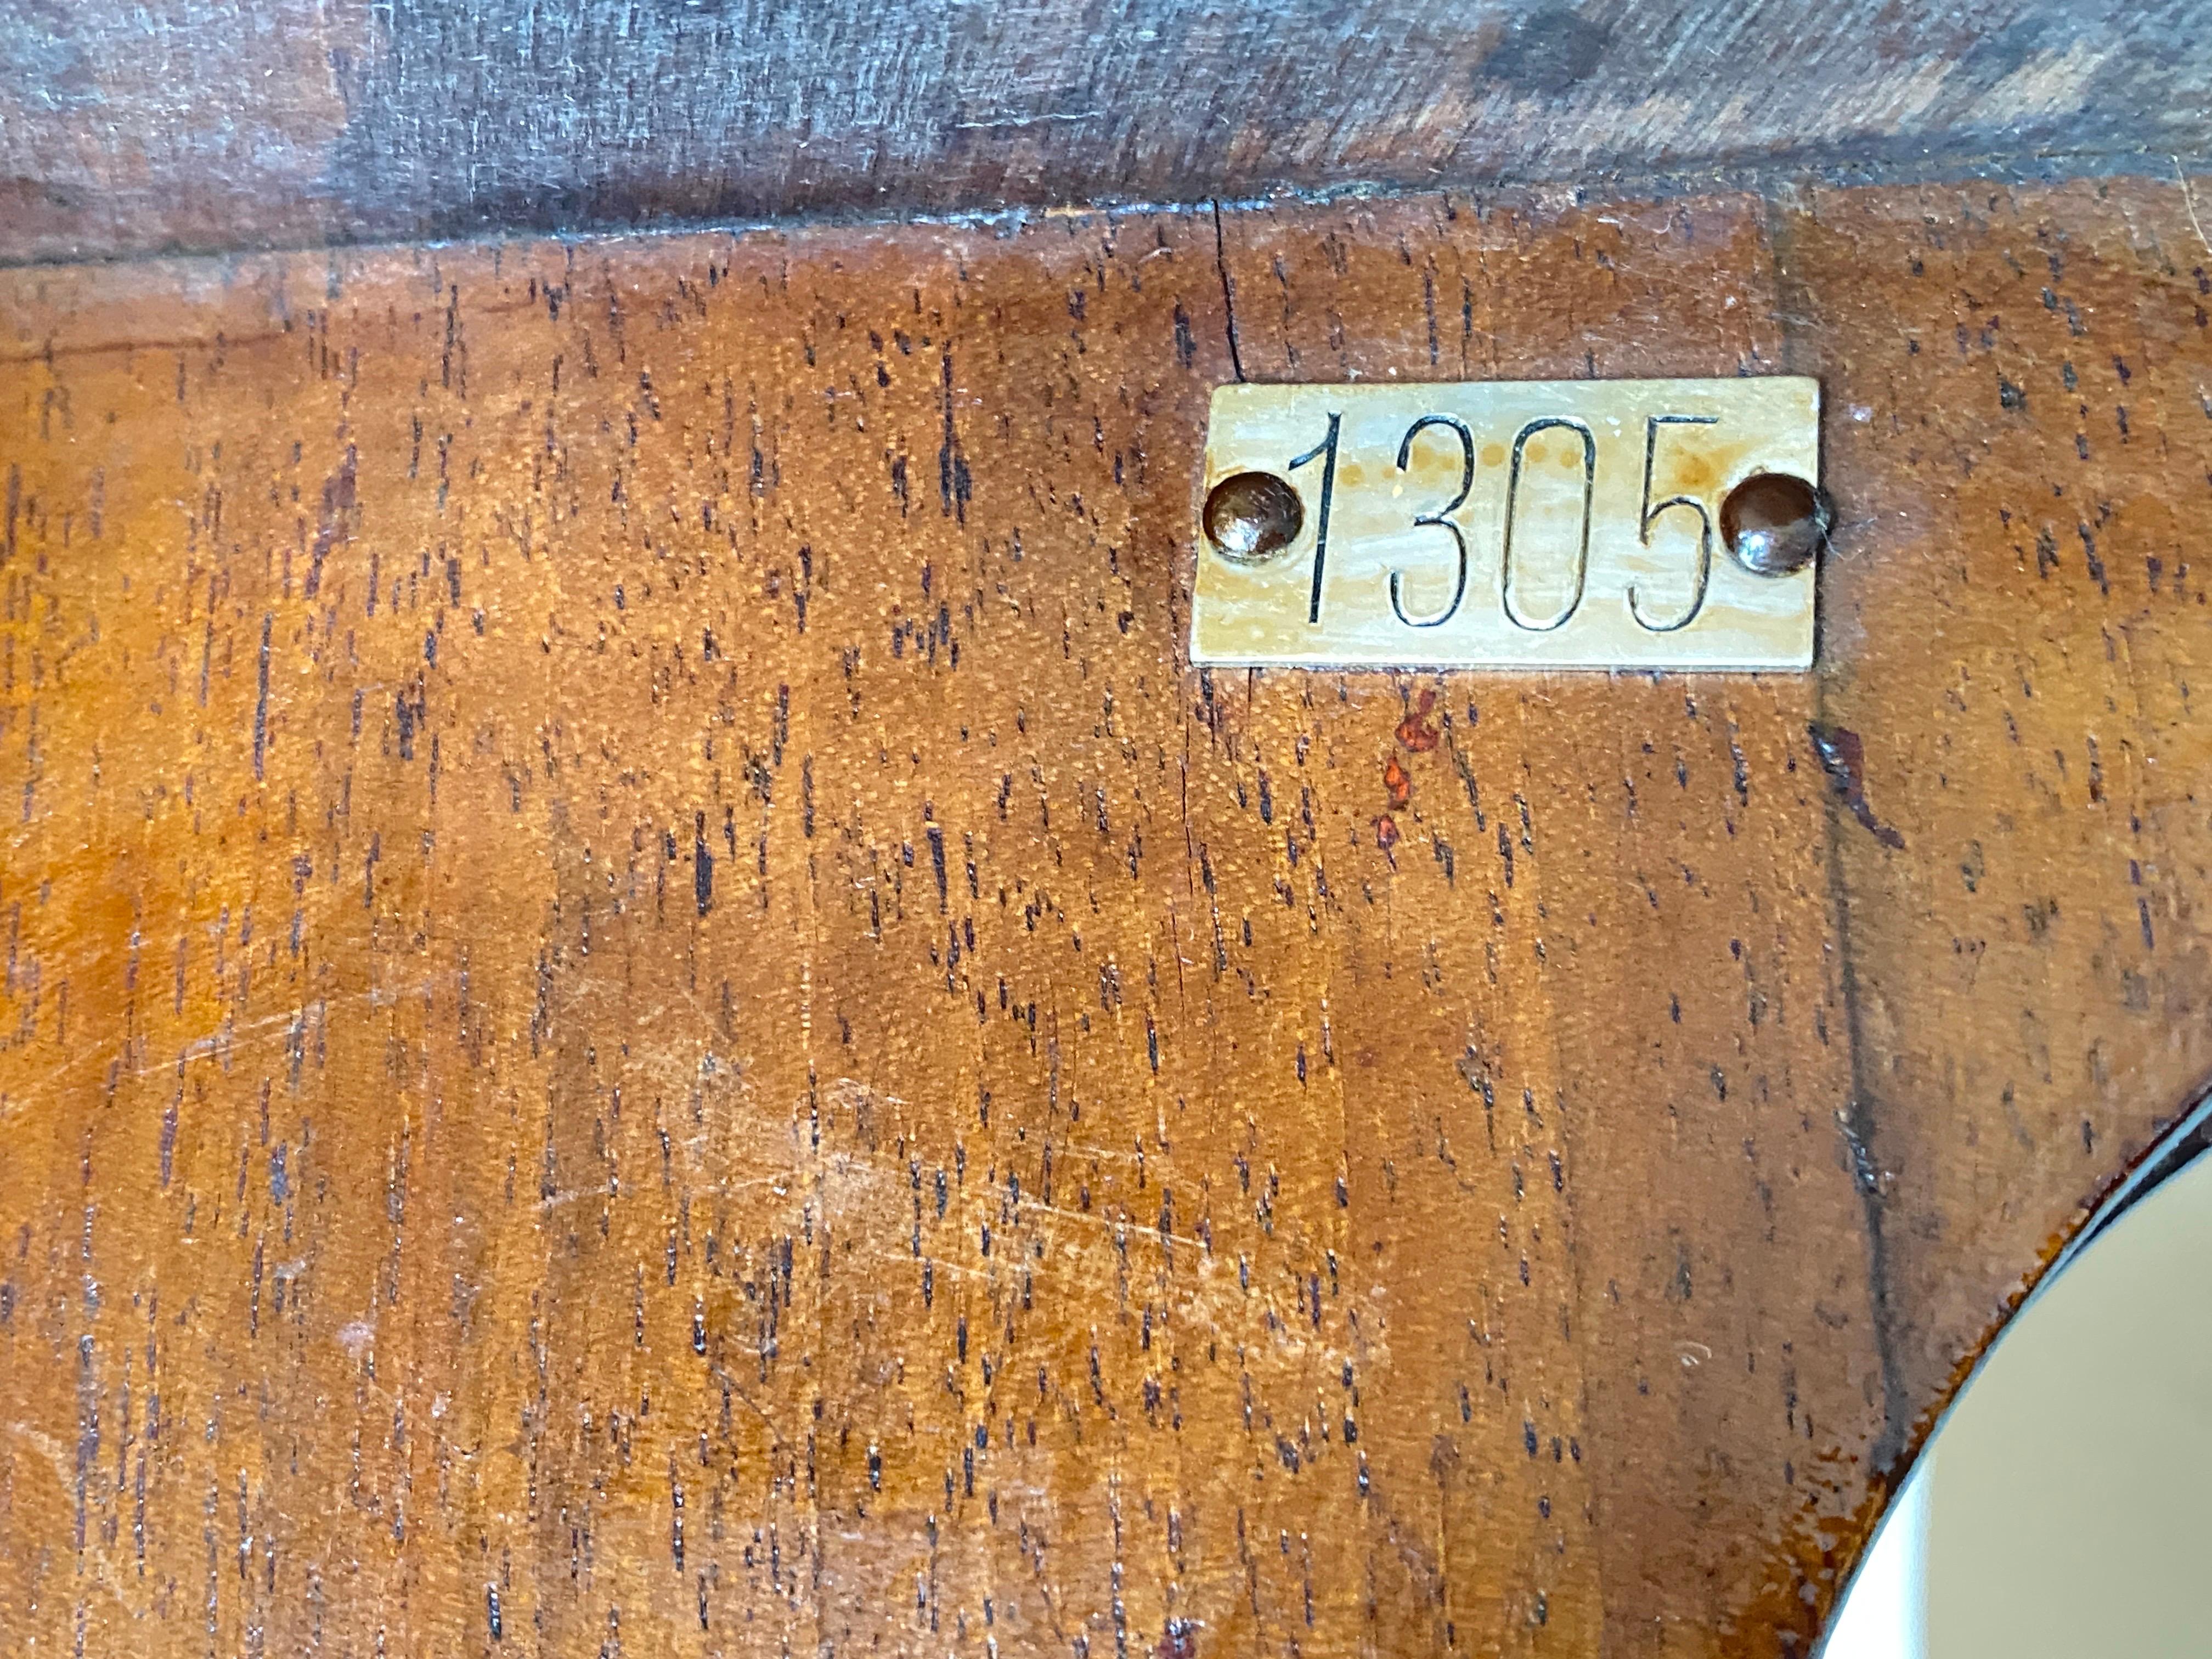 Dieser Hocker ist in gutem Zustand. Sie hat  ein traditioneller Tapezierer, nach den Regeln des Handwerks.
Das Holz hat eine alte Patina, sie sind in einem guten Zustand.
Es wurde im 19. Jahrhundert hergestellt.
